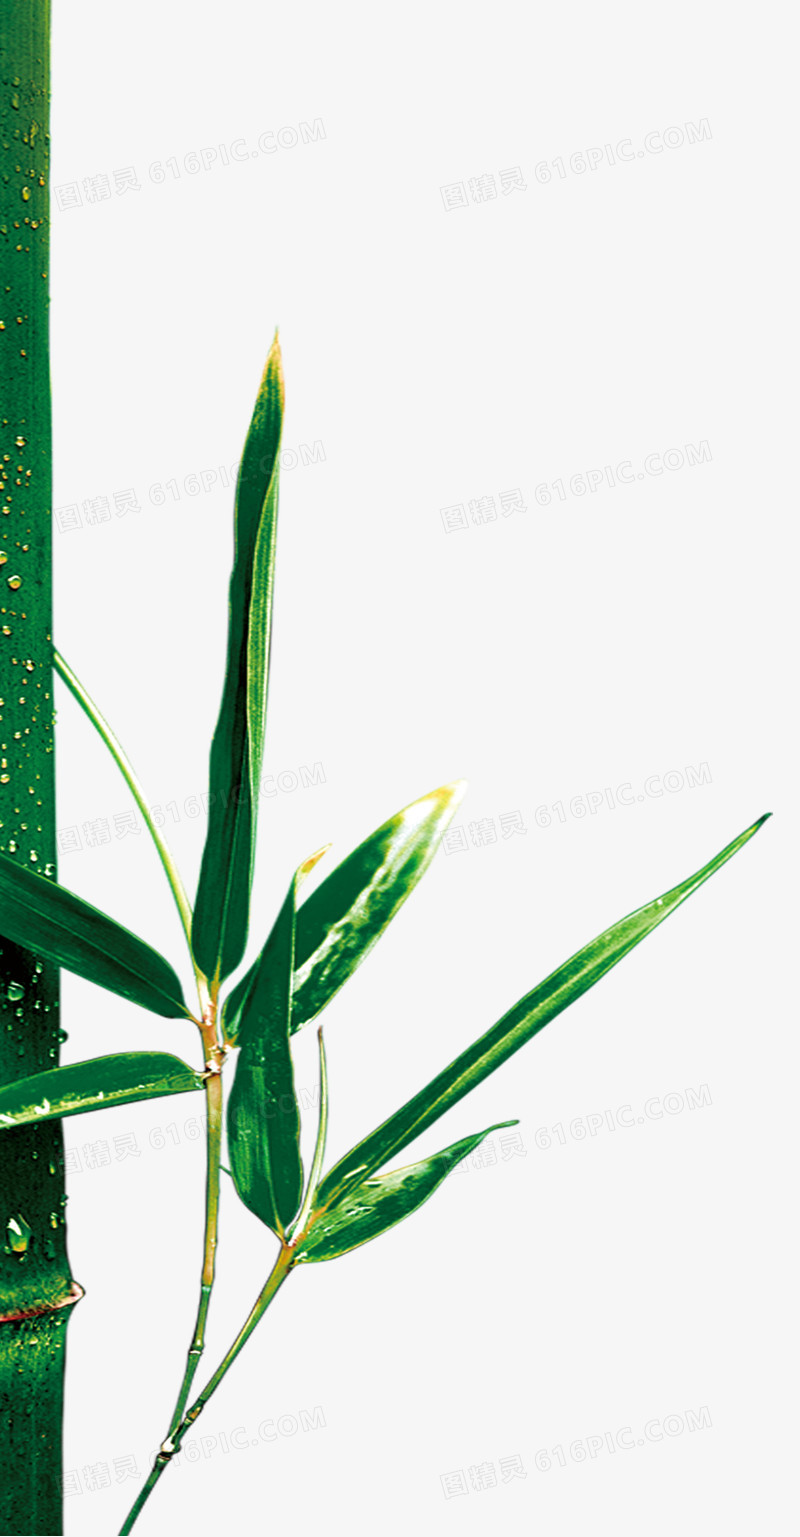 竹子,竹叶,绿叶,绿色,淘宝素材图片免费下载_高清png